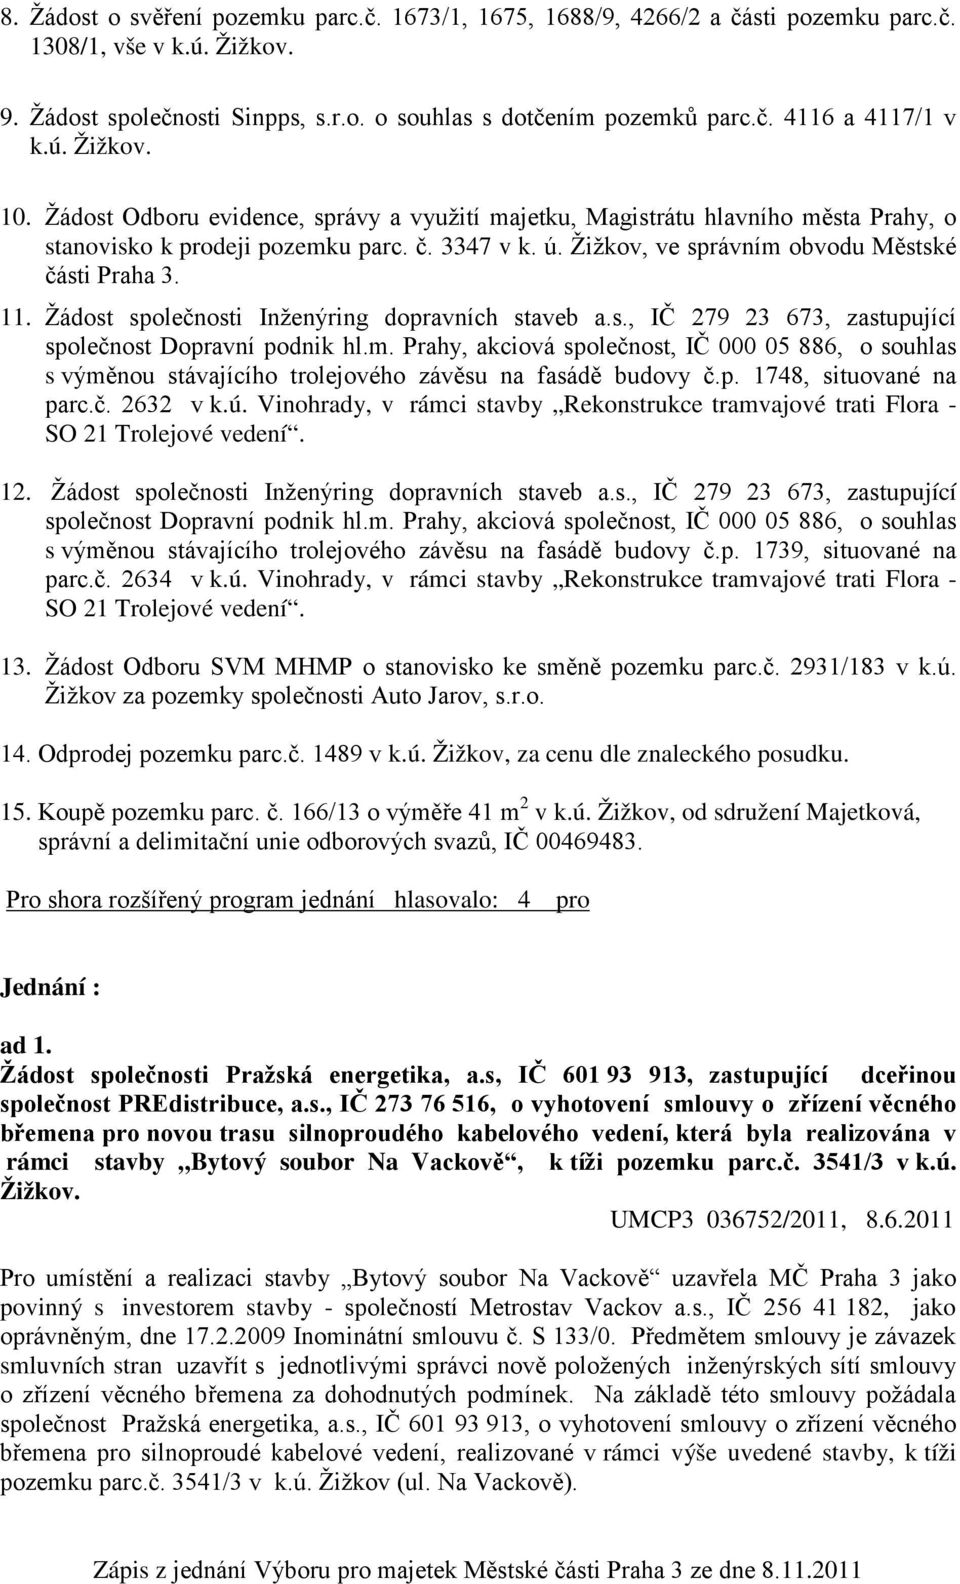 11. Žádost společnosti Inženýring dopravních staveb a.s., IČ 279 23 673, zastupující společnost Dopravní podnik hl.m.